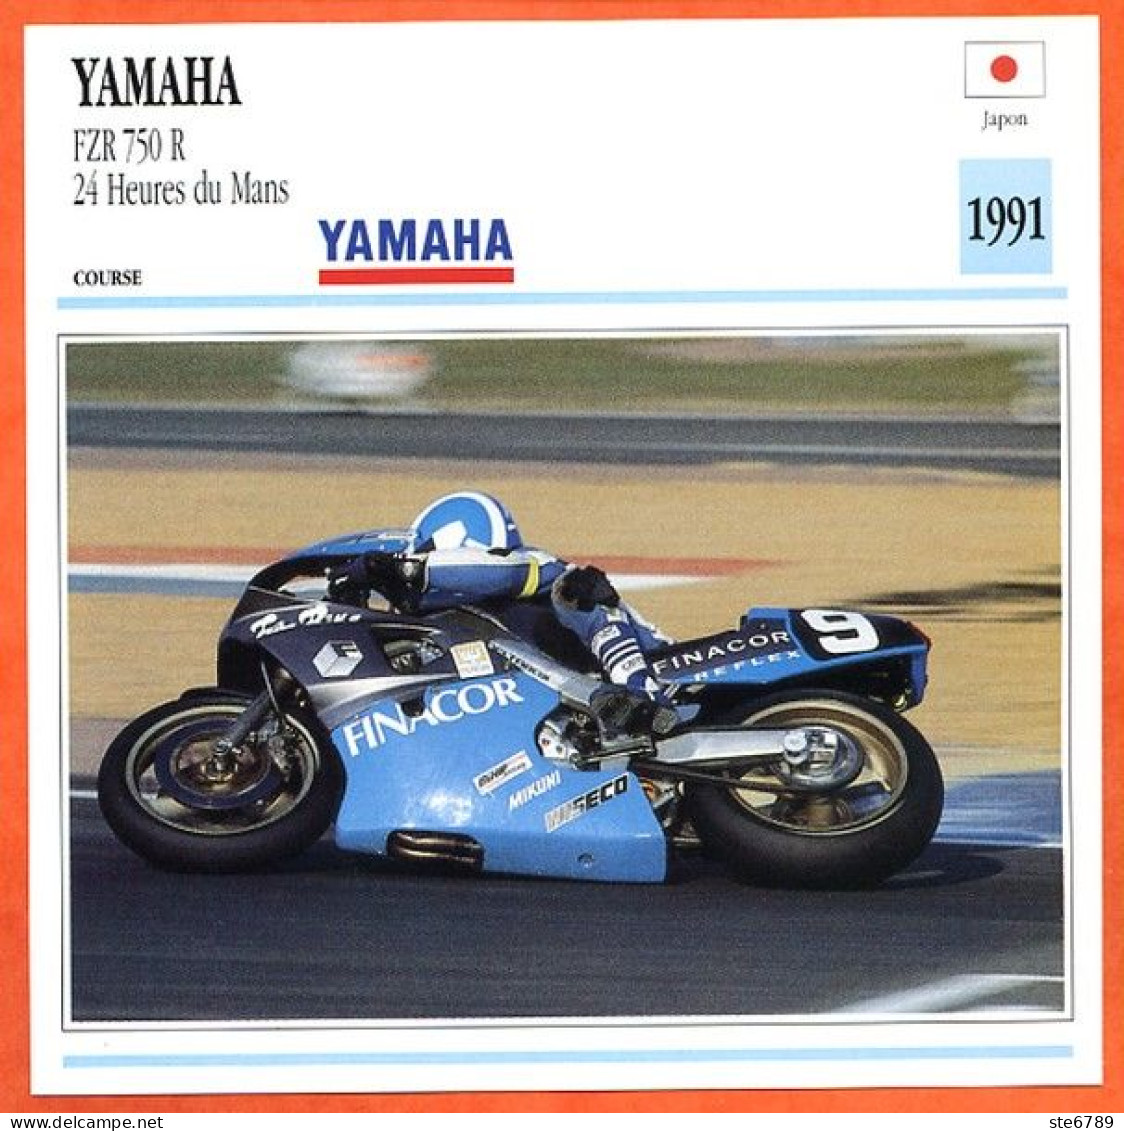 YAMAHA FZR 750 R 24 Heures Du Mans Fiche Technique Moto - Sports